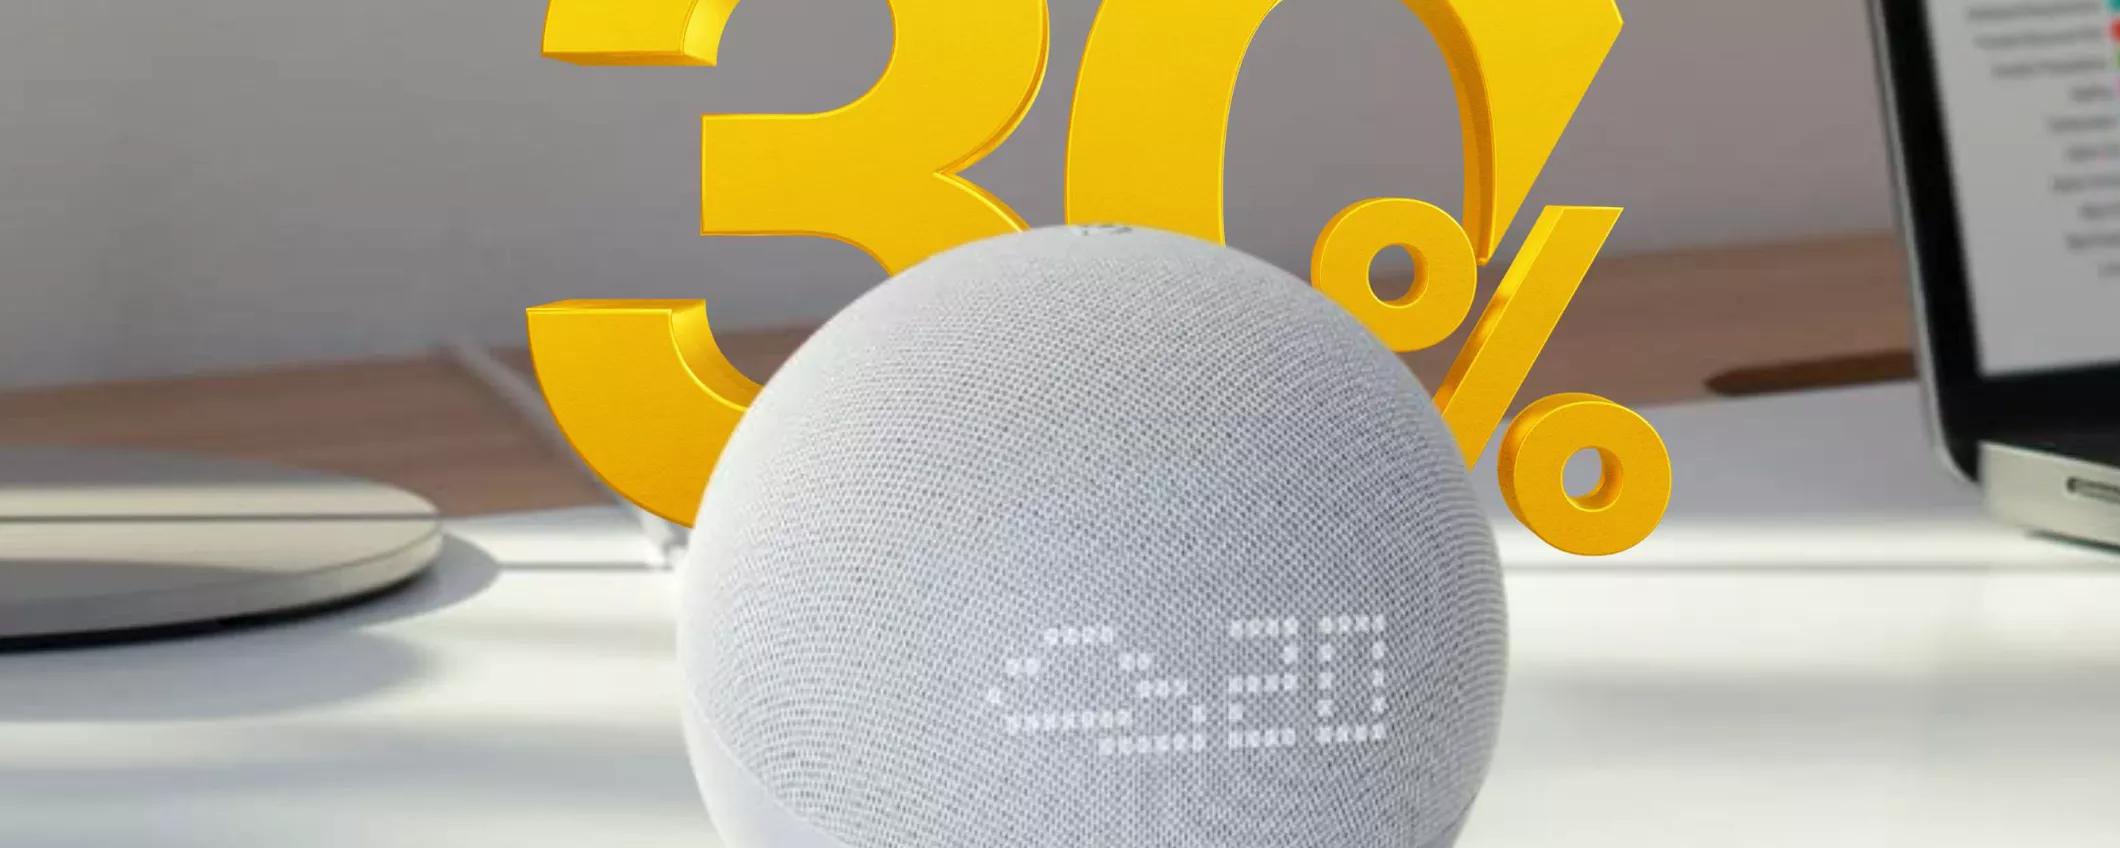 Echo Dot con Orologio: La Tua Casa Diventa Smart a un Prezzo Speciale